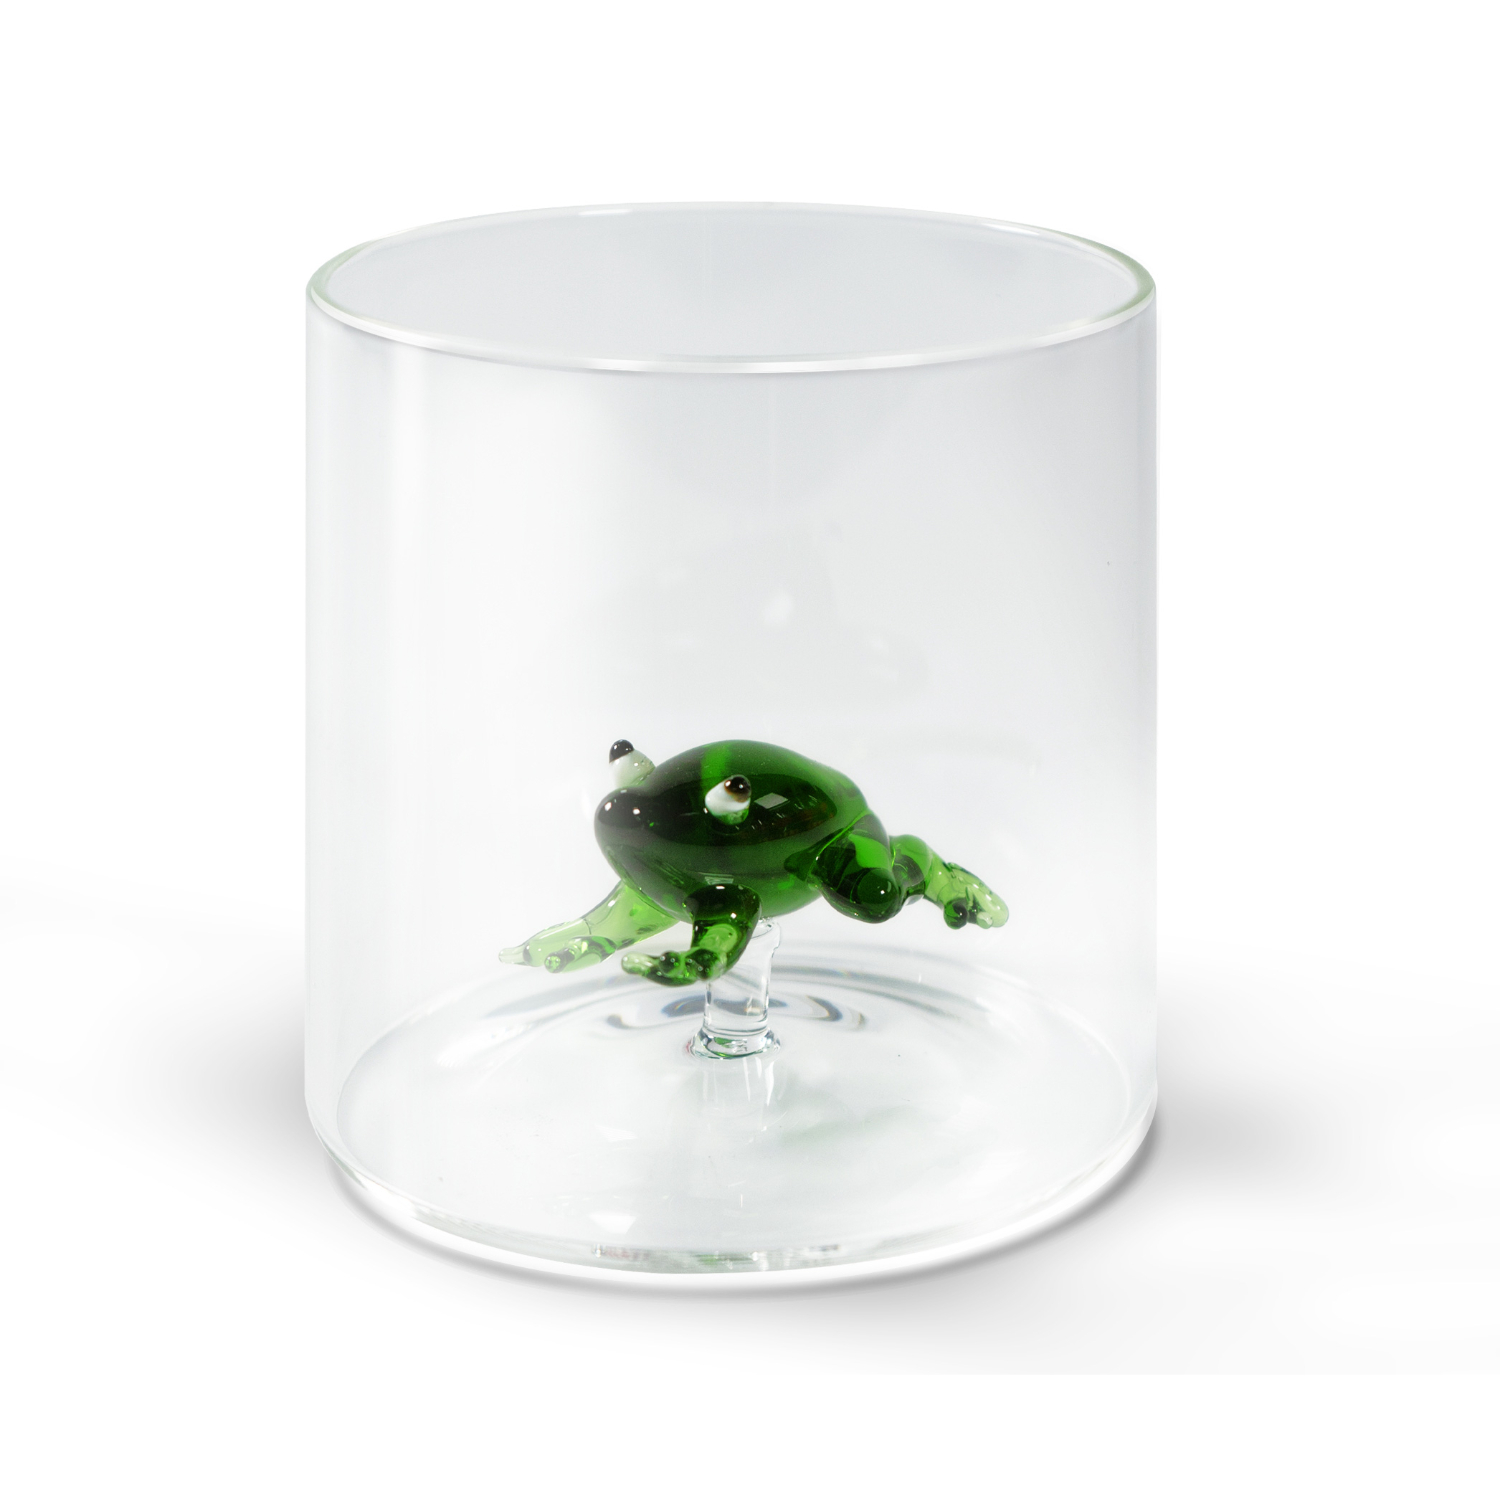 Стакан WD Lifestyle Лягушка 250 мл стакан для пишущих принадлежностей квадратный металлическая сетка зелёный